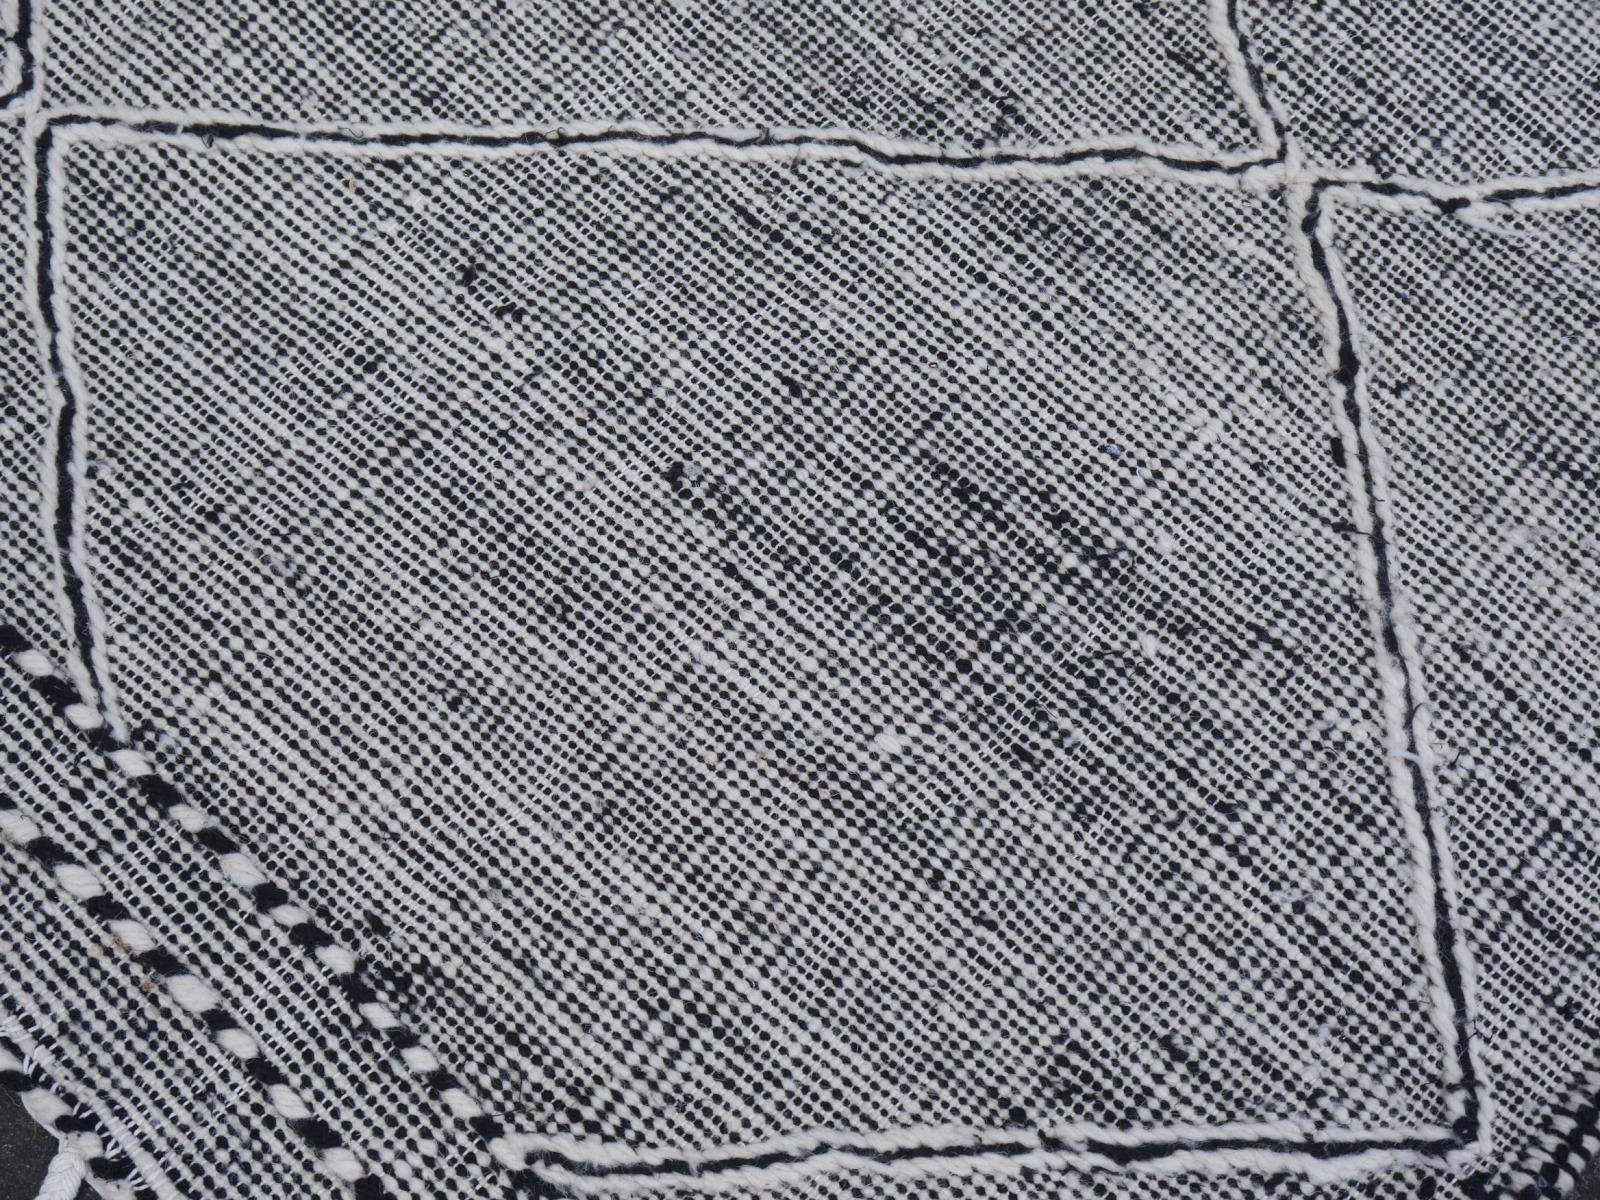 Ein großer, zimmergroßer Kilim-Teppich mit geometrischem Muster, handgewebt in Marokko. Es wird aus feiner Wolle hergestellt - handgesponnen, handgefärbt und von Meisterwebern flach gewebt. Dieser Kilim-Teppich ist sehr dekorativ und hat eine